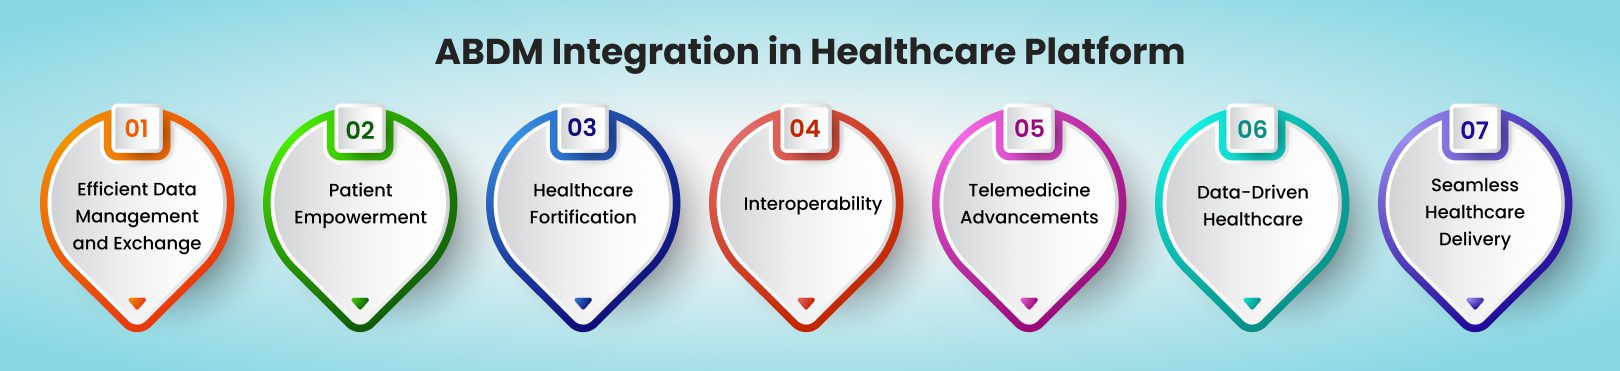 ABDM Integration in Healthcare Platform